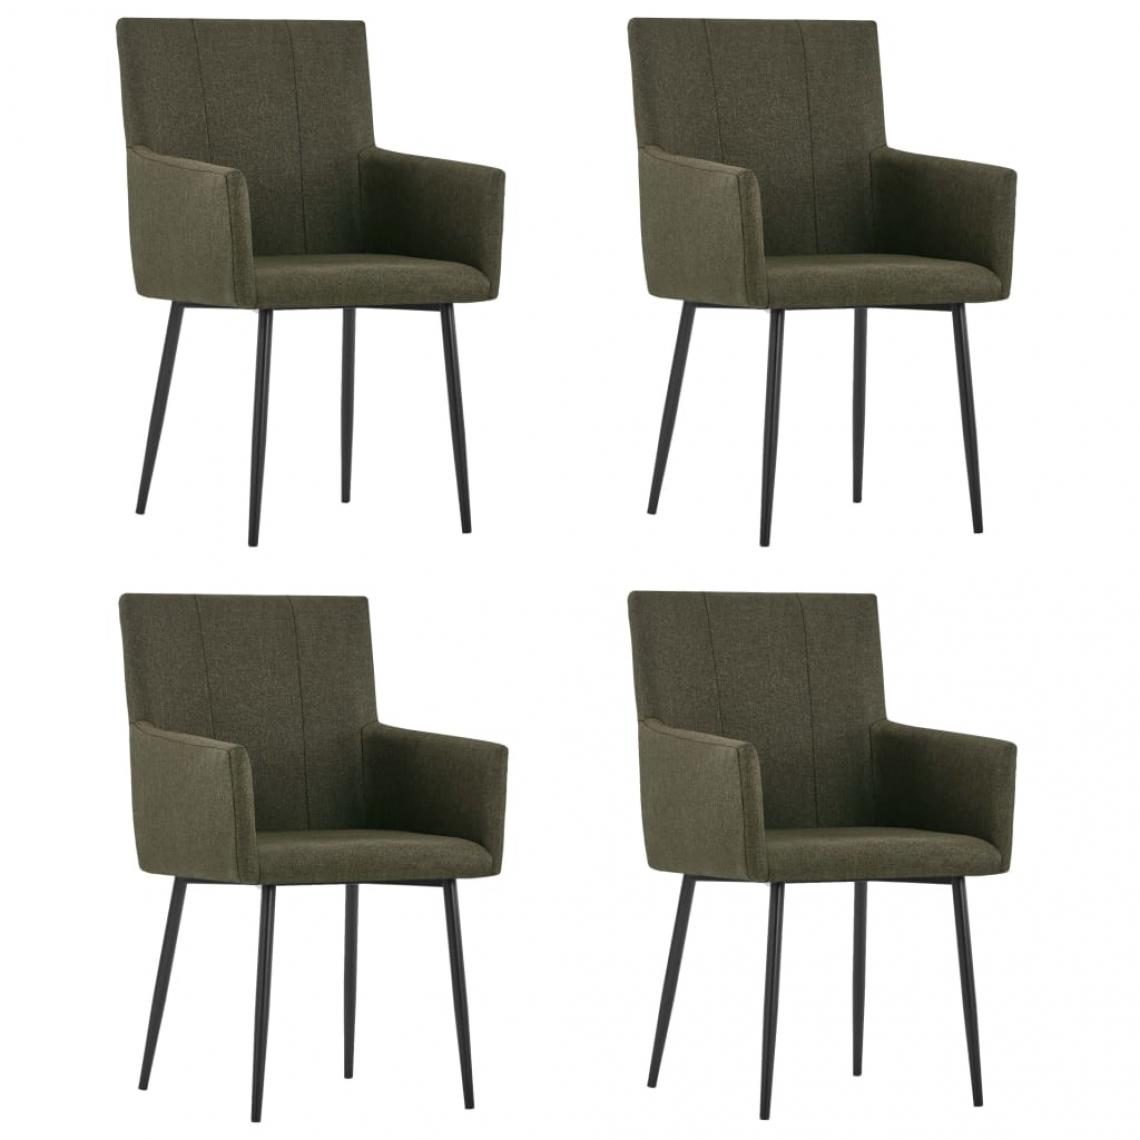 Decoshop26 - Lot de 4 chaises de salle à manger cuisine avec accoudoirs design moderne tissu marron CDS021211 - Chaises